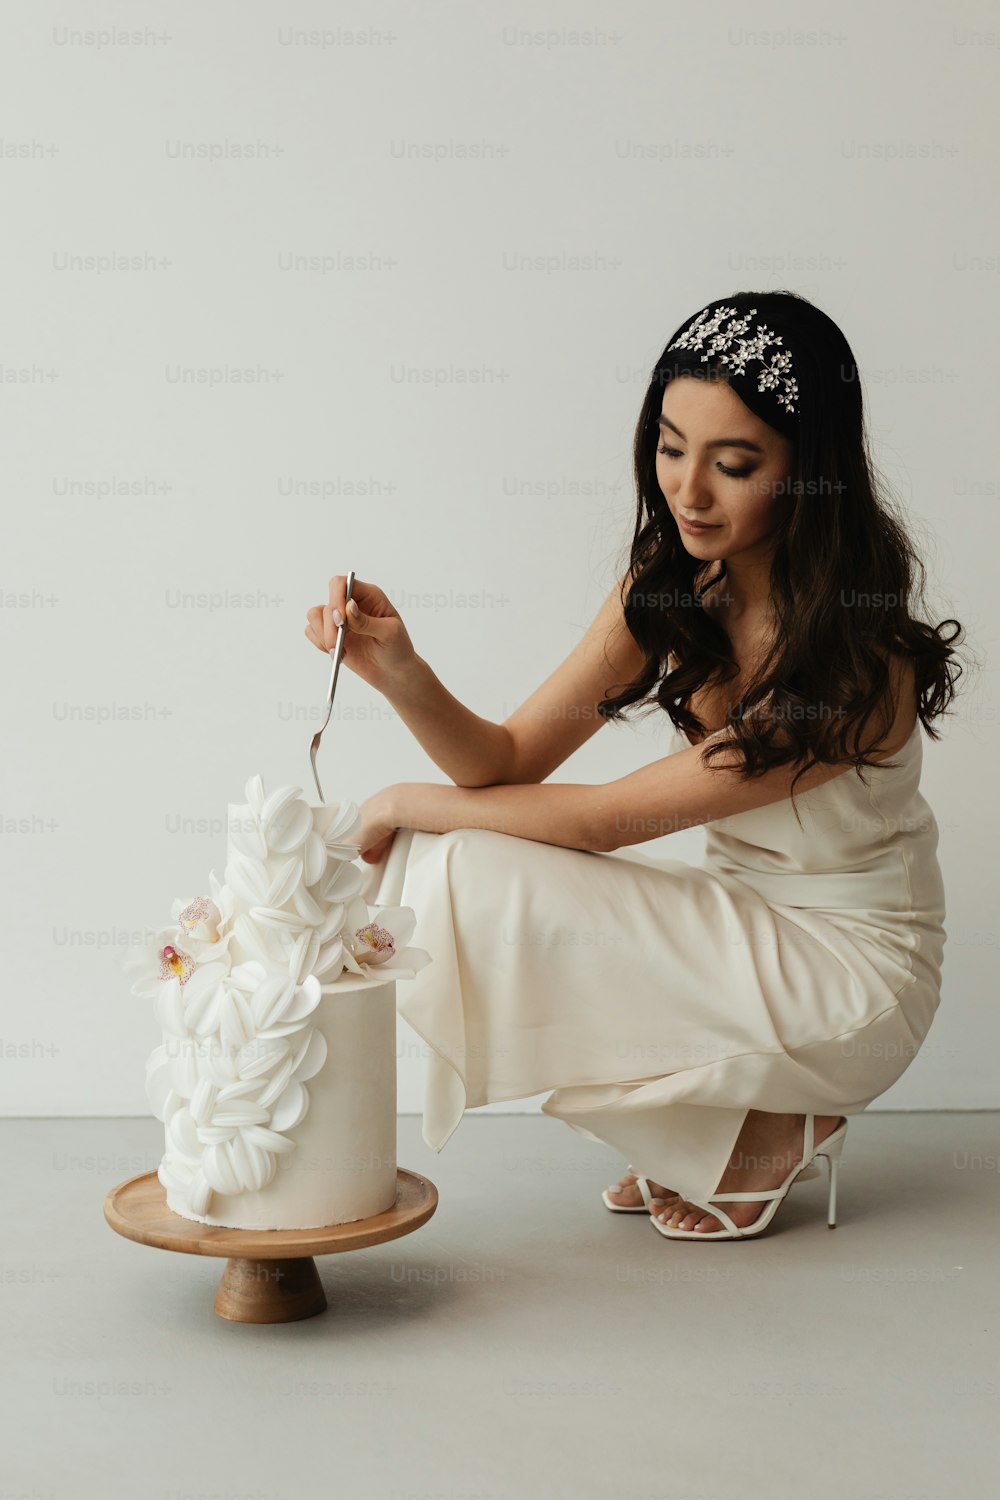 Una donna in un vestito bianco che taglia una torta nuziale